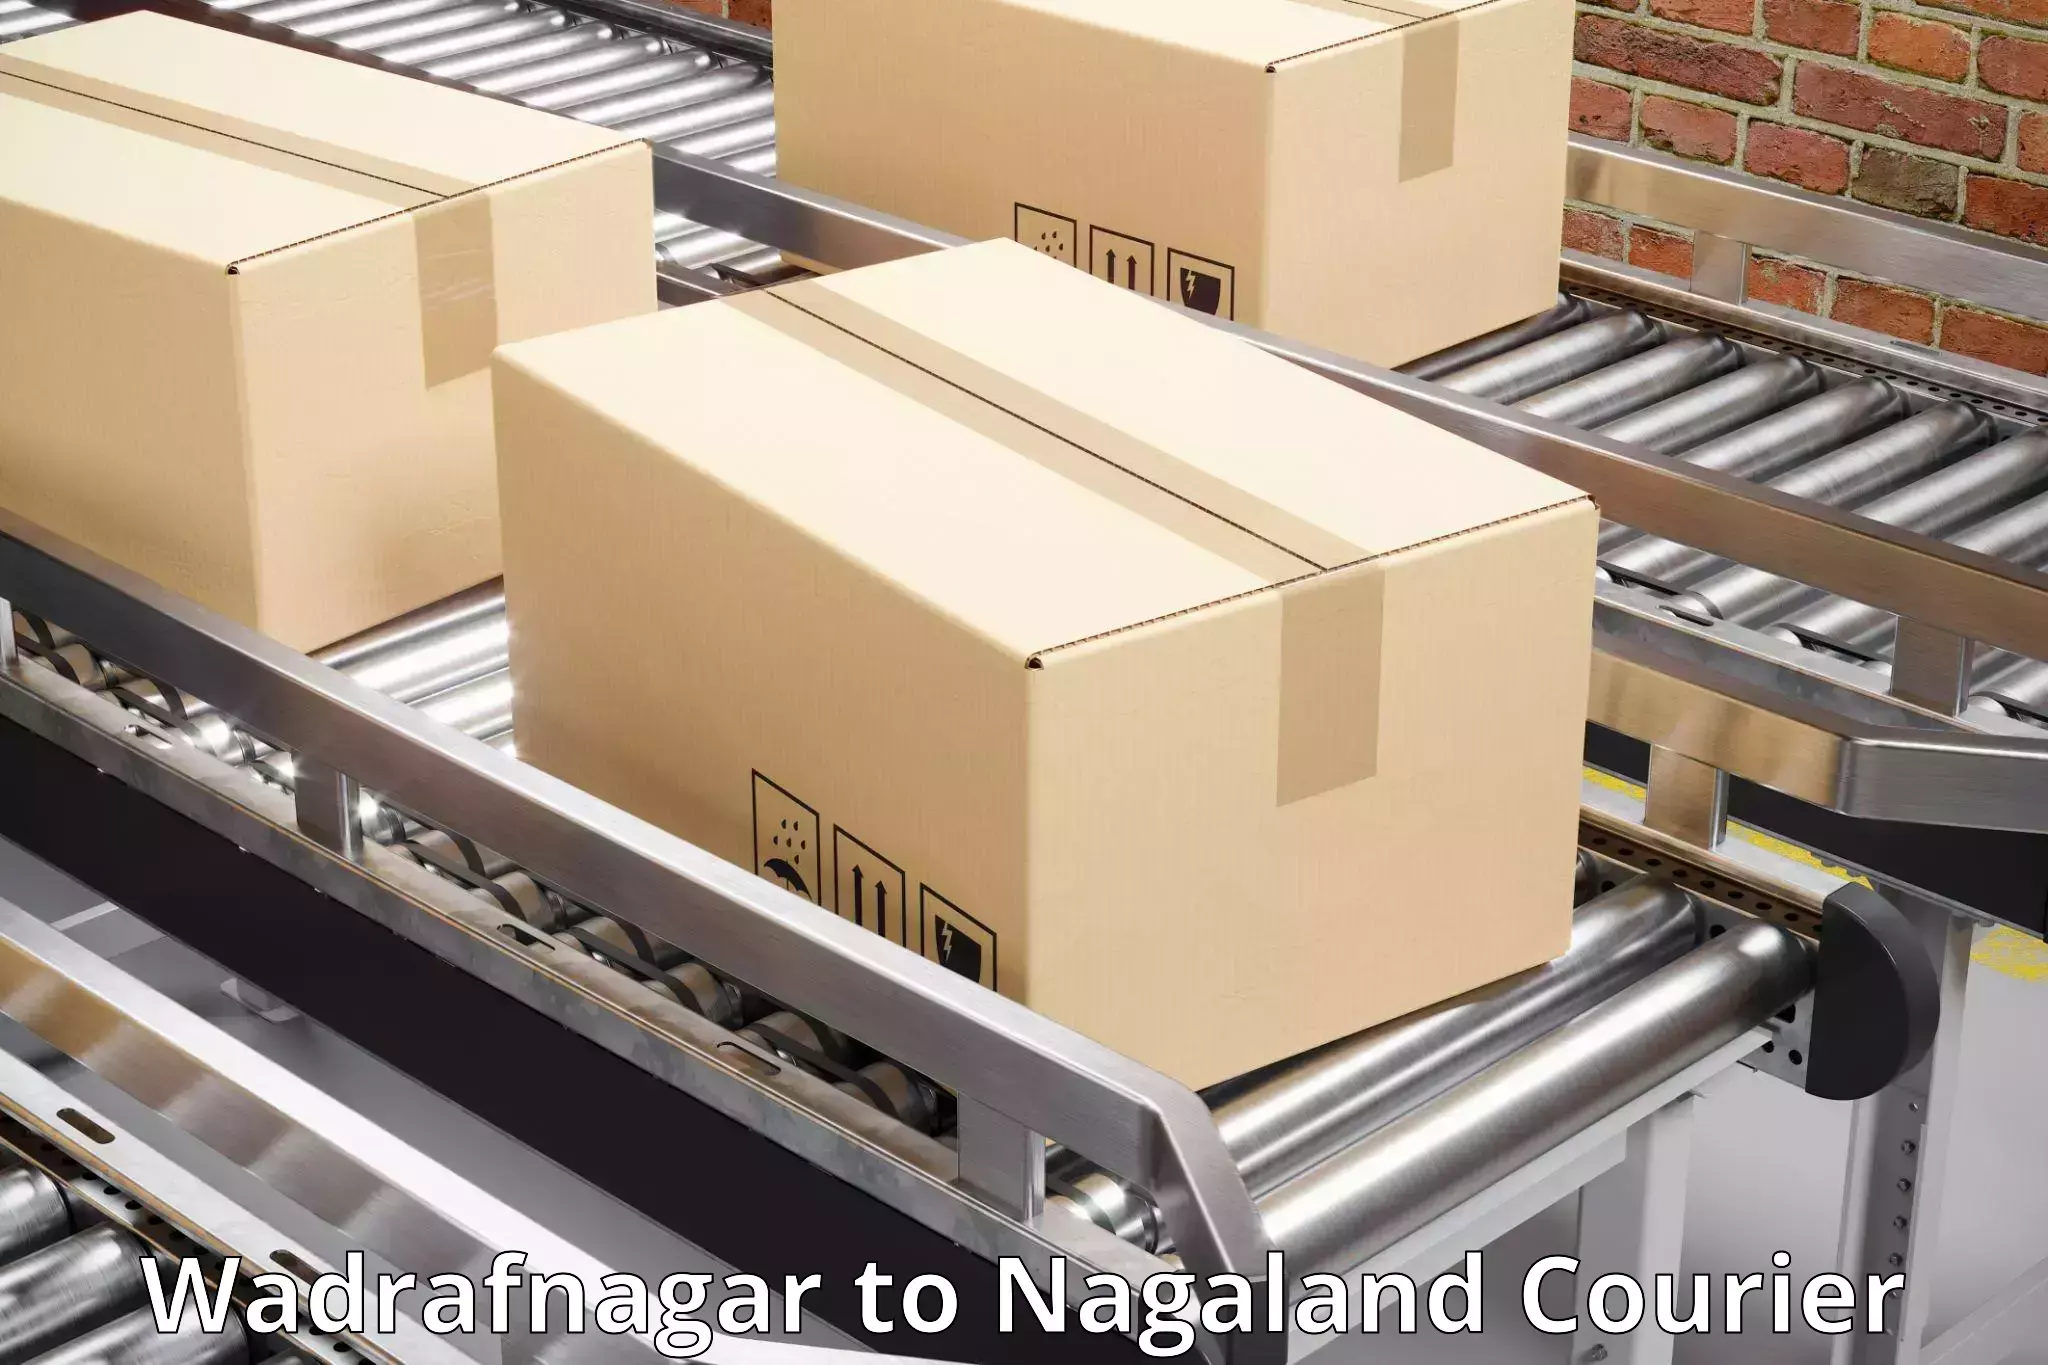 Online package tracking Wadrafnagar to Nagaland